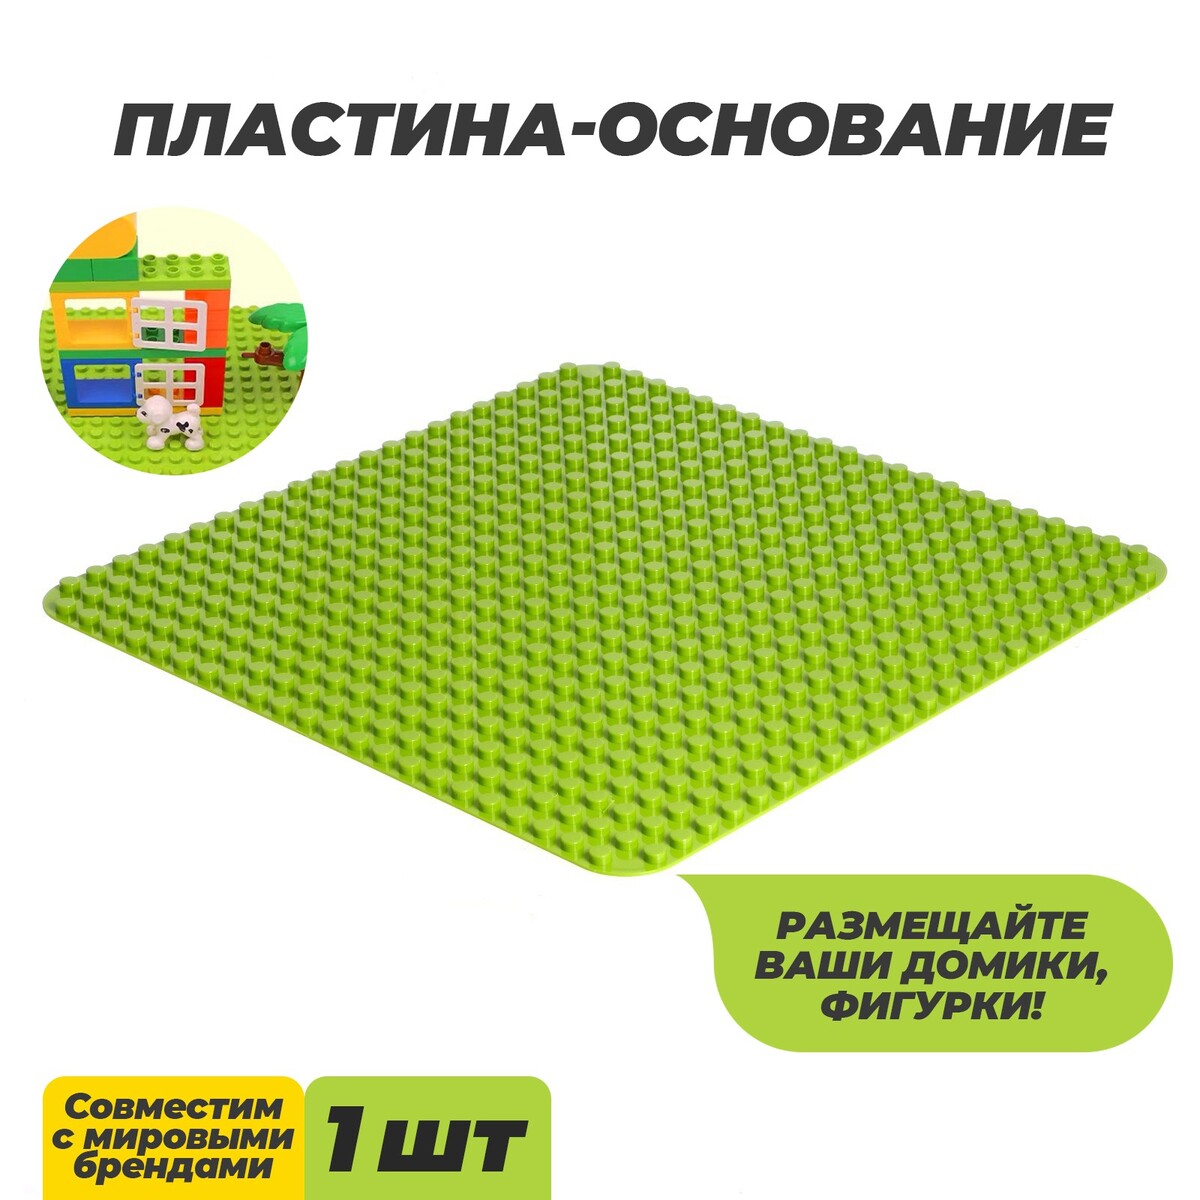 Пластина-основание для конструктора, 38,4 × 38,4 см, цвет салатовый пластина основание для конструктора 12 8 × 12 8 см салатовый